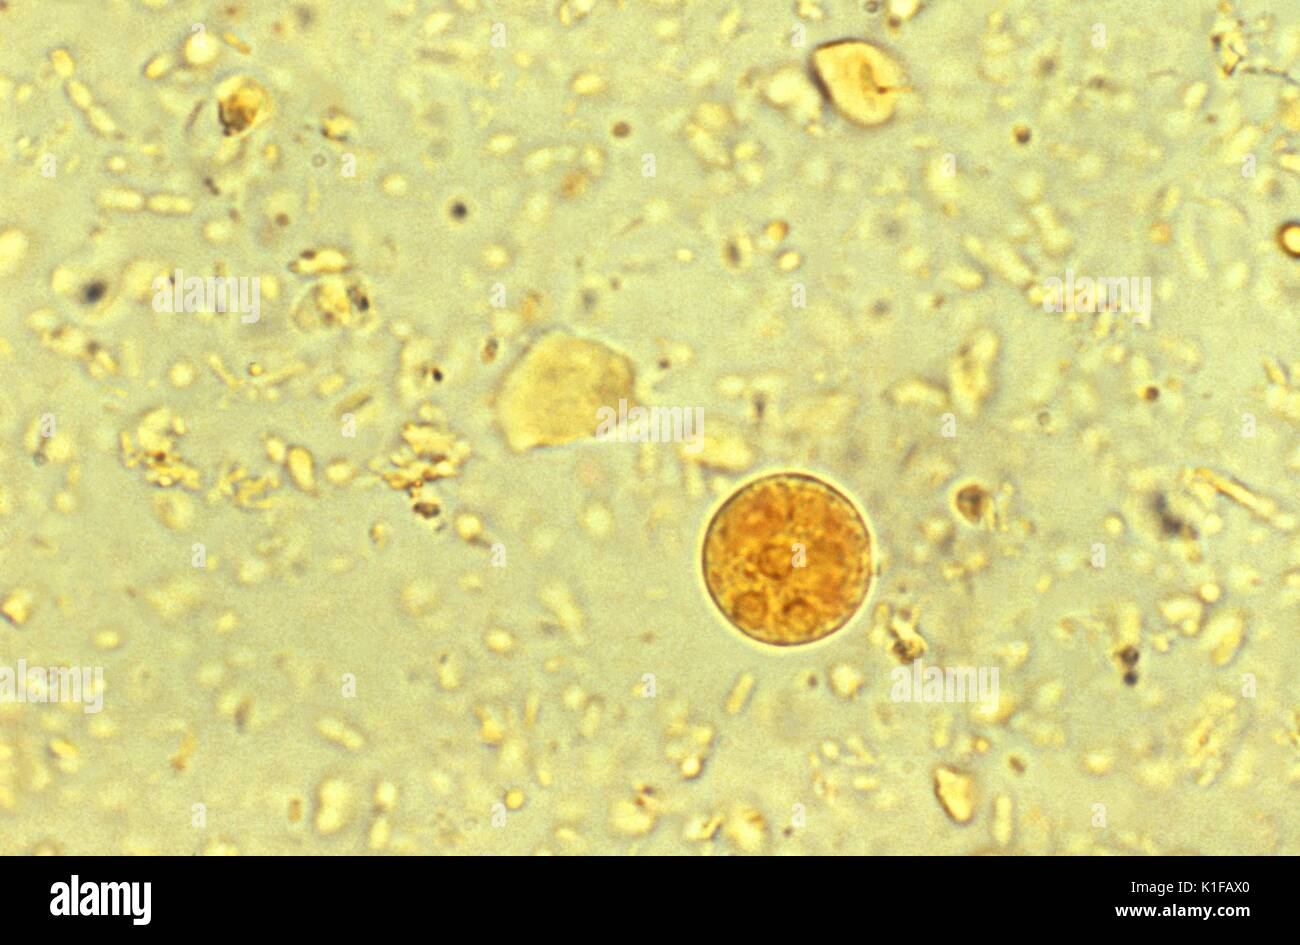 Dieses Jod-gebeizt photomicrograph die Anwesenheit eines Entamoeba histolytica Amöbische parasitäre Zyste offenbart. Diese bestimmten Organismus enthalten drei, deutlich sichtbare Zellkerne, oder trinucleated. Reifen Entamoeba histolytica Zysten haben 4 Kerne, die charakteristisch sind zentral gelegene karyosomes und Fein, gleichmäßig verteilte peripheren Chromatin. Zysten in der Regel messen 12 bis 15{Mikro} m. Bild mit freundlicher Genehmigung von CDC/Dr. Mae Melvin, 1977. Stockfoto